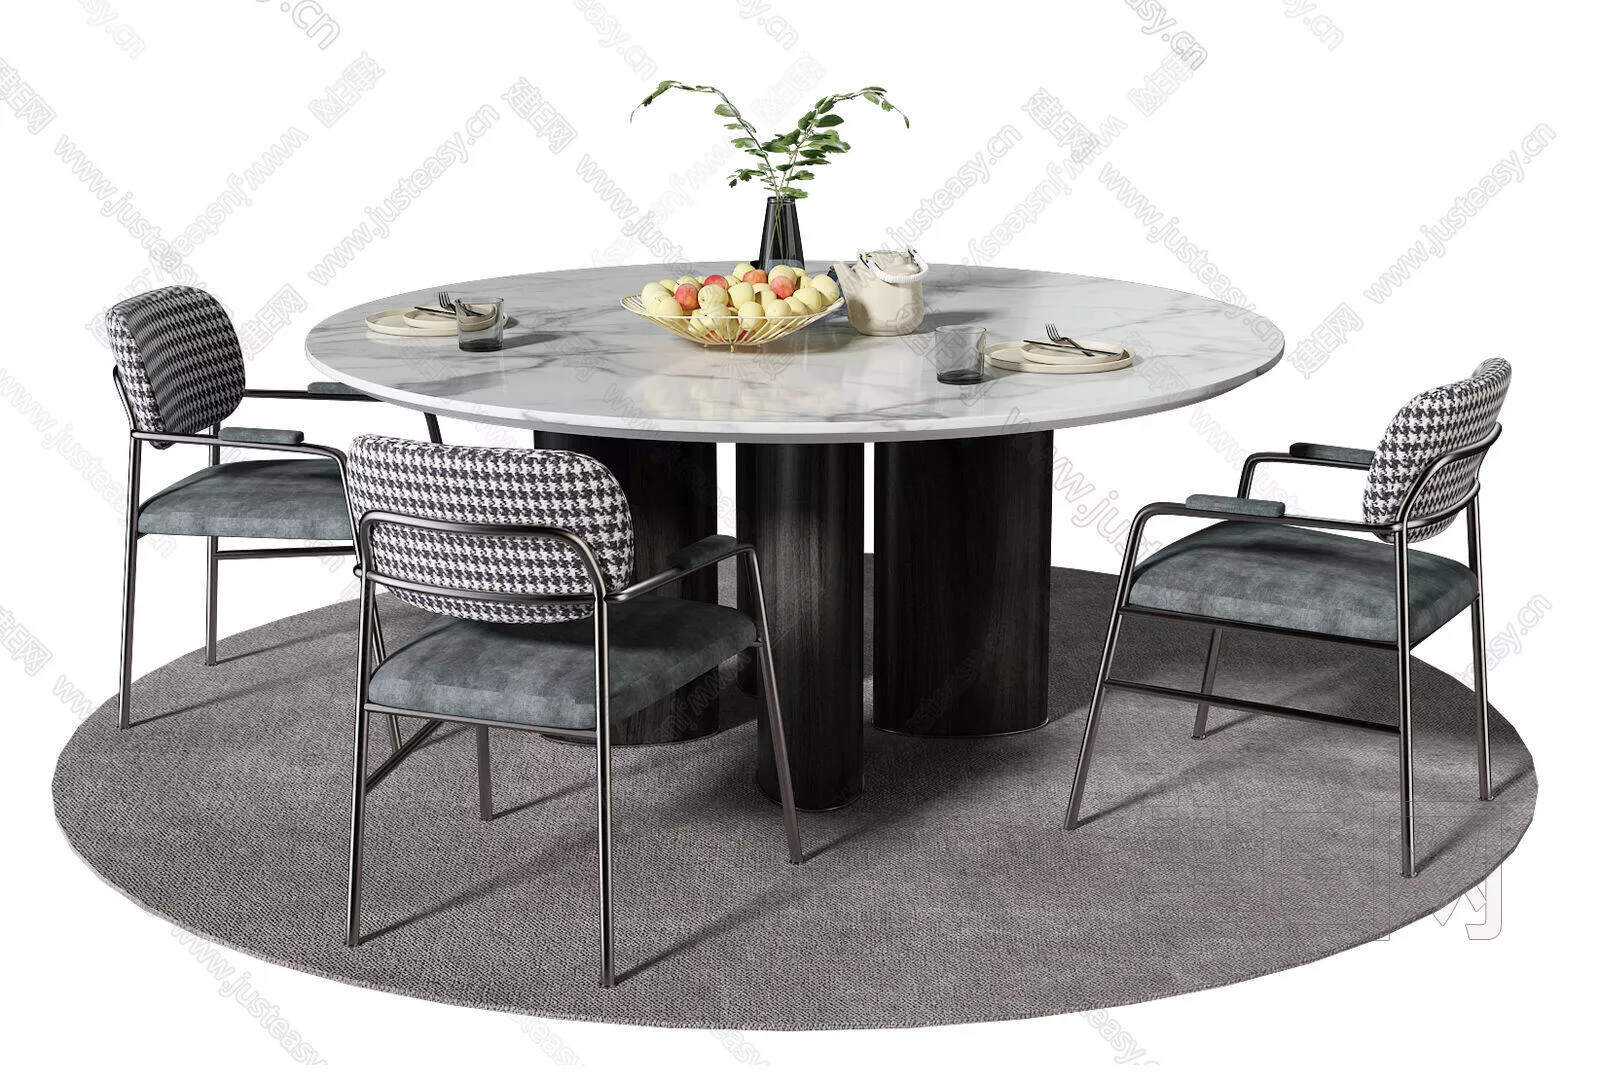 MODERN DINING TABLE SET - SKETCHUP 3D MODEL - ENSCAPE - 115688926